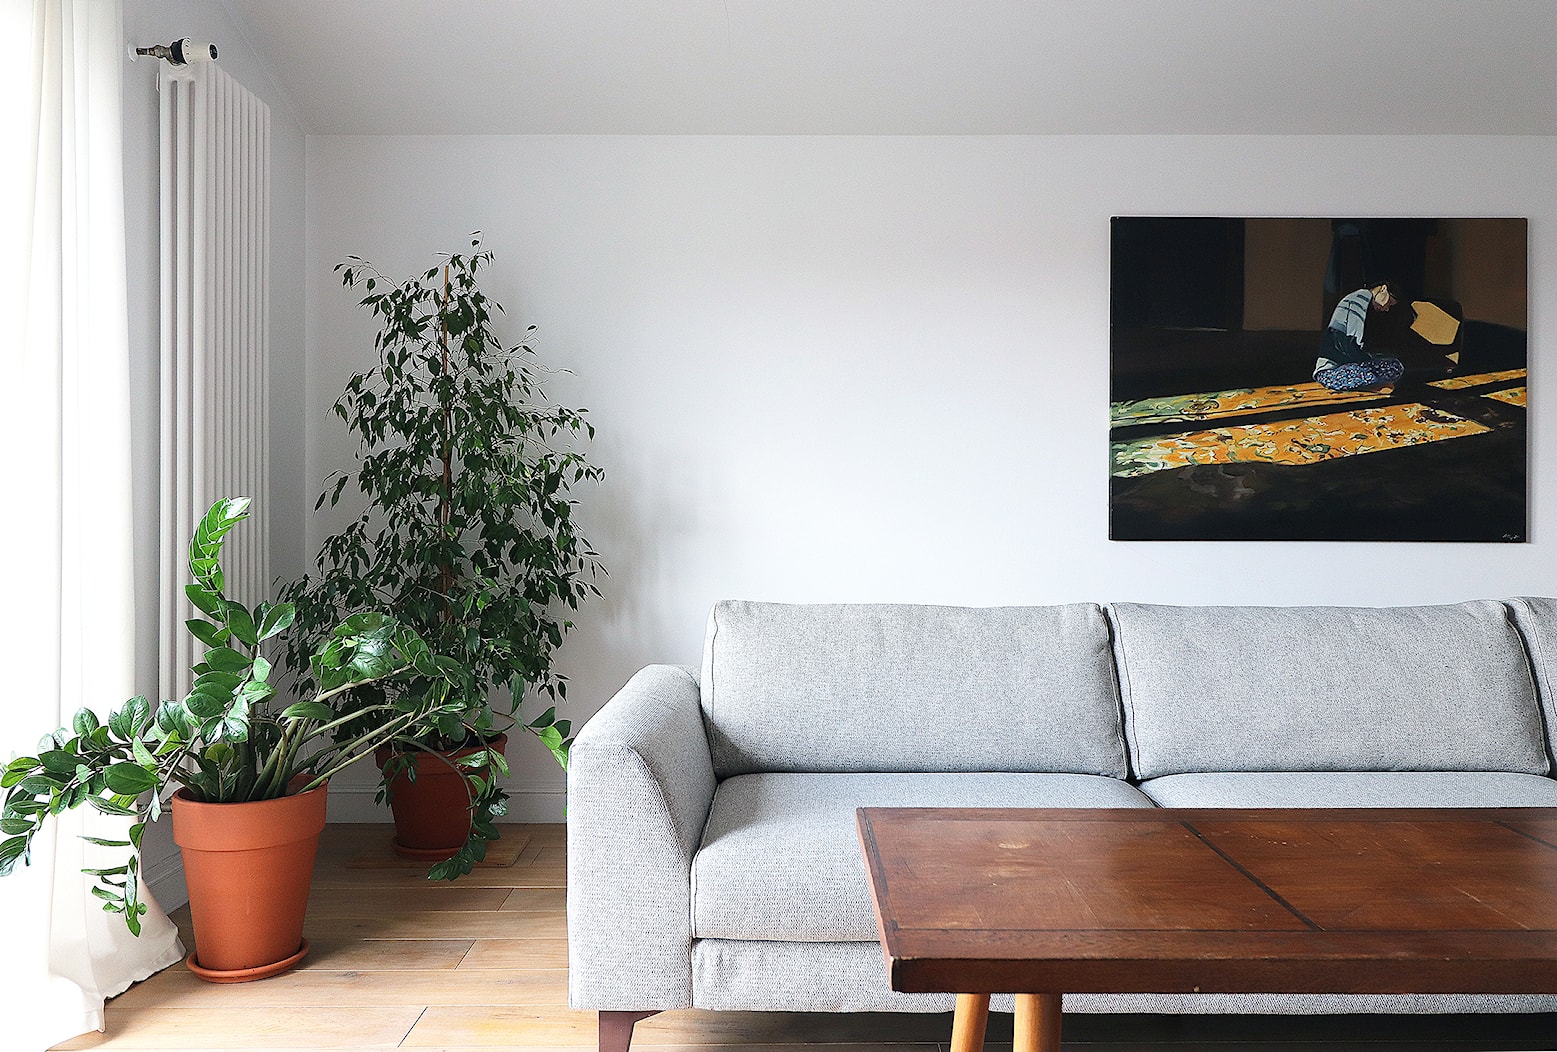 Mieszkanie AL - Salon, styl minimalistyczny - zdjęcie od Agnieszka Lisek architekt wnętrz - Homebook